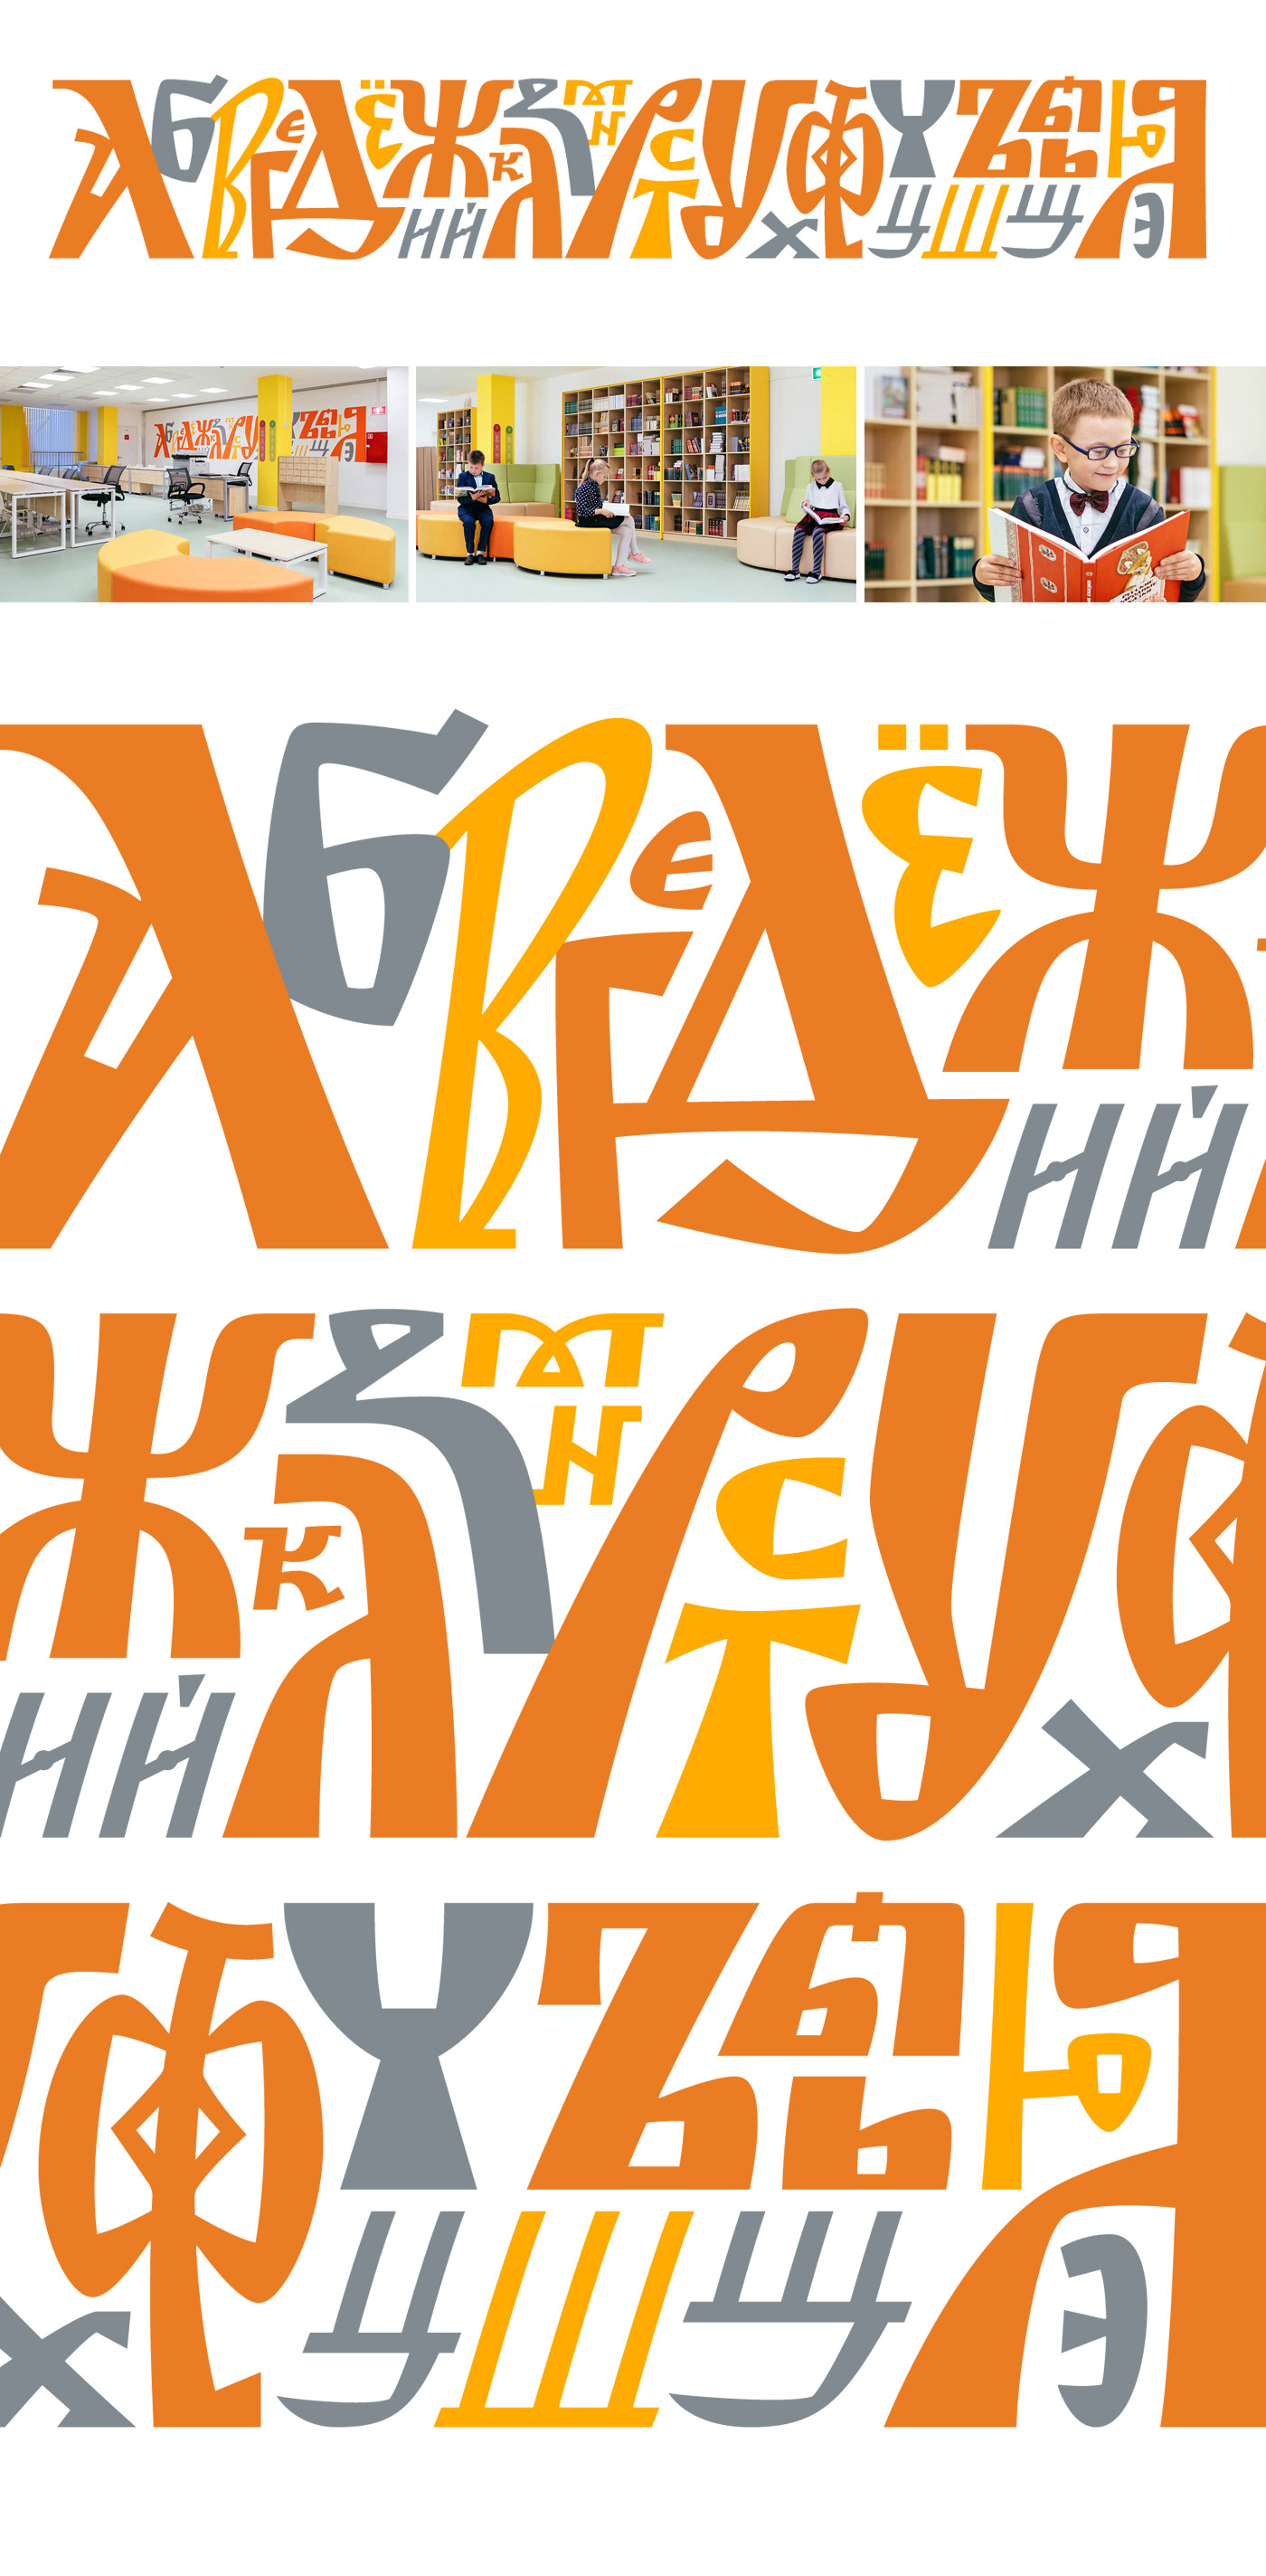 Calligraphy   Cyrillic lettering Slavic каллиграфия кириллица леттеринг роспись стен русское письмо составное письмо